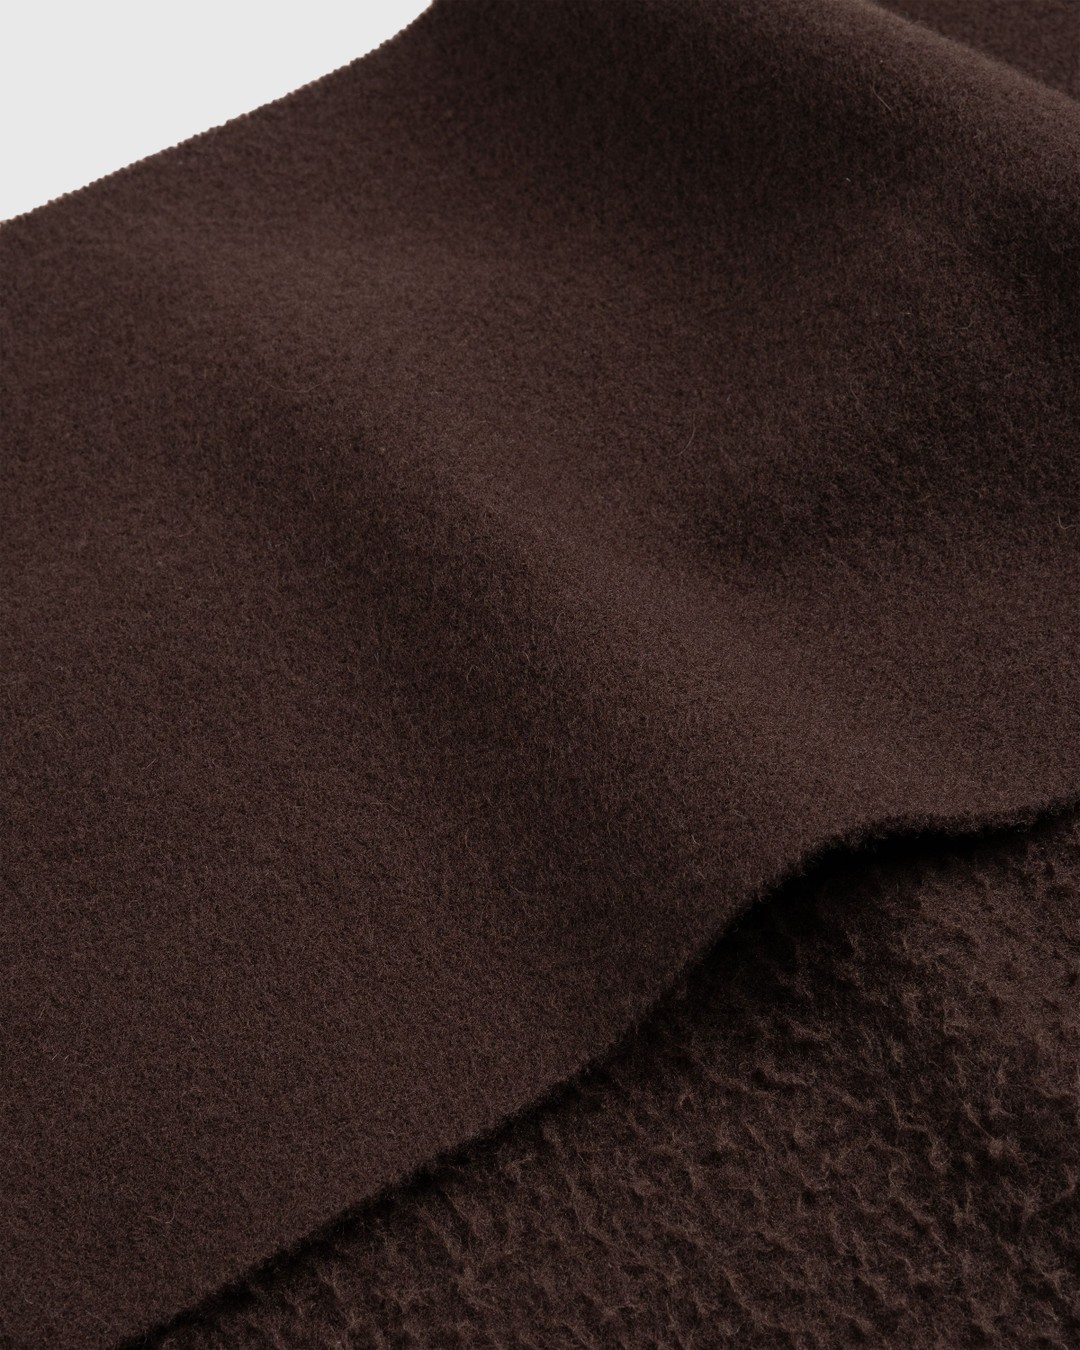 Acne Studios – Wool Fringe Scarf Chocolate Brown - Scarves - Brown - Image 5